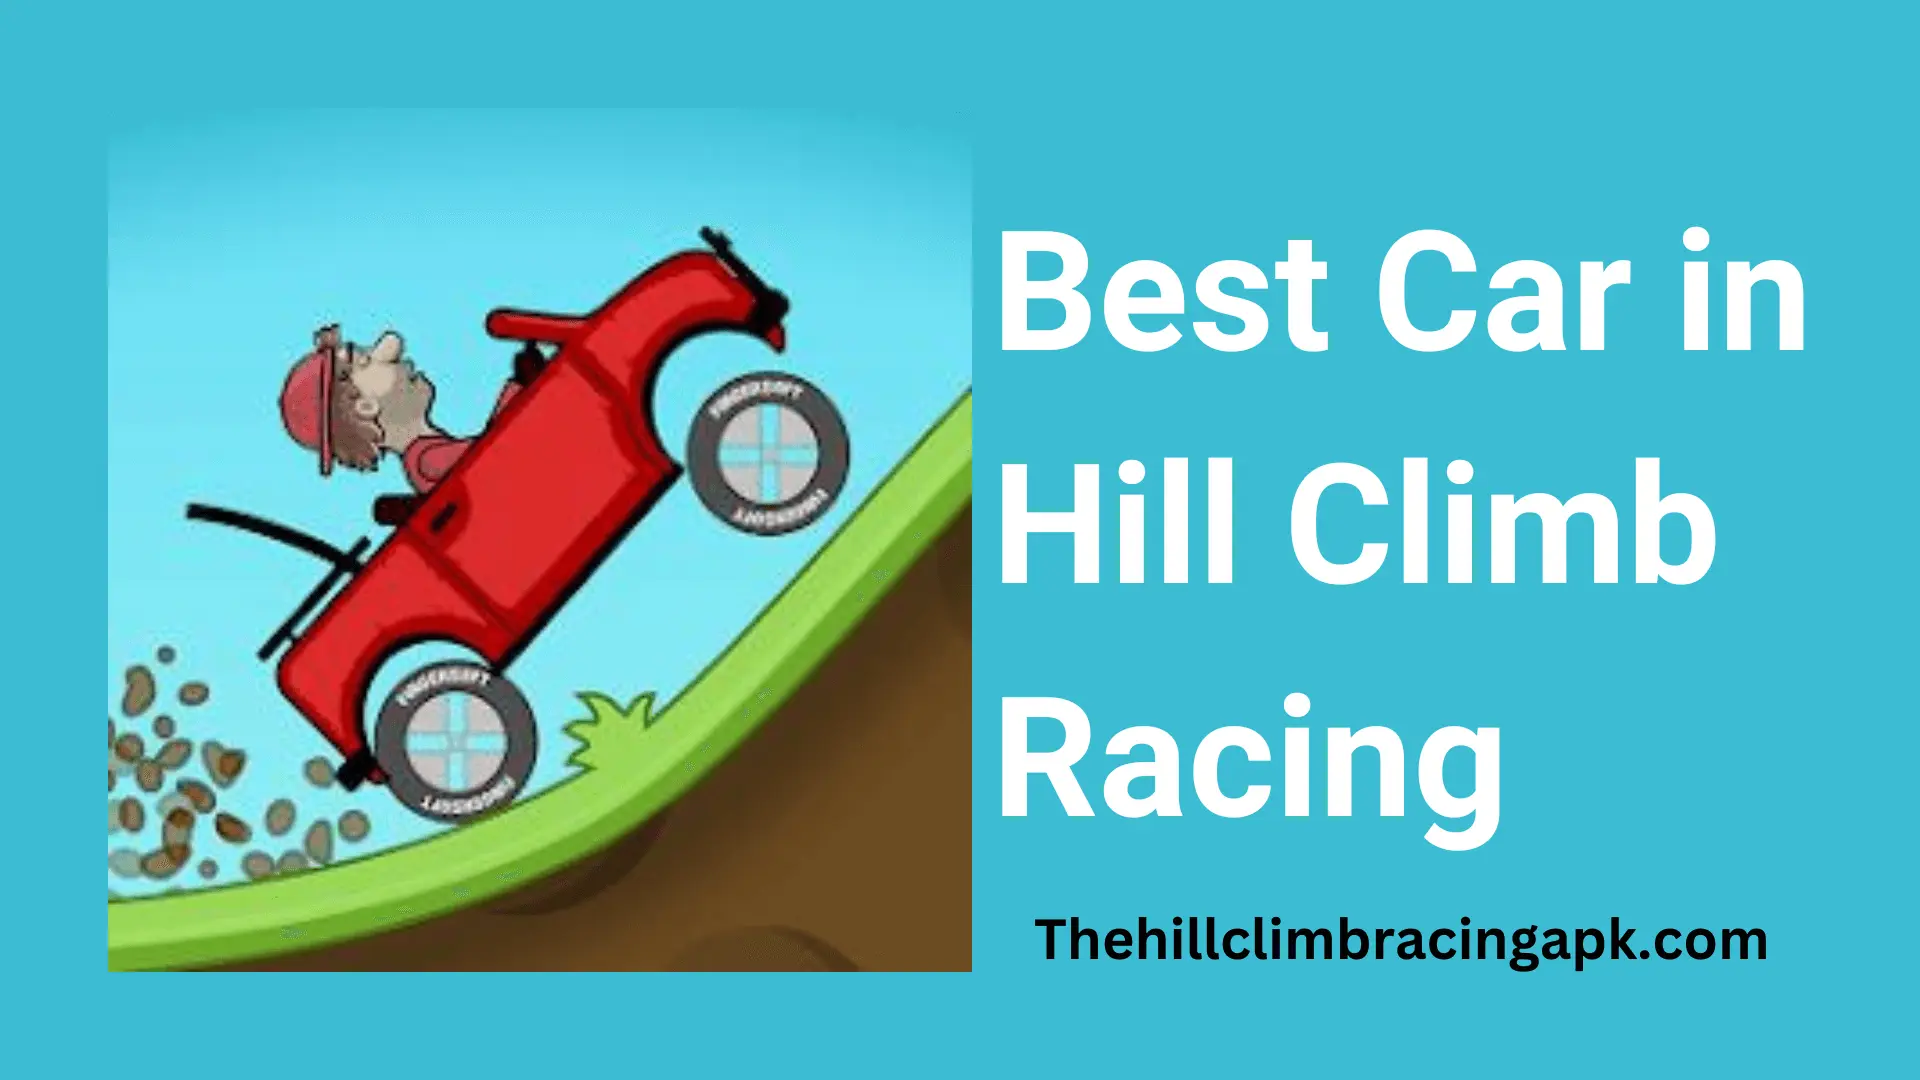 Download Hill Climb Racing Mod Apk 2023 (Unlimited Money) v1.57.0